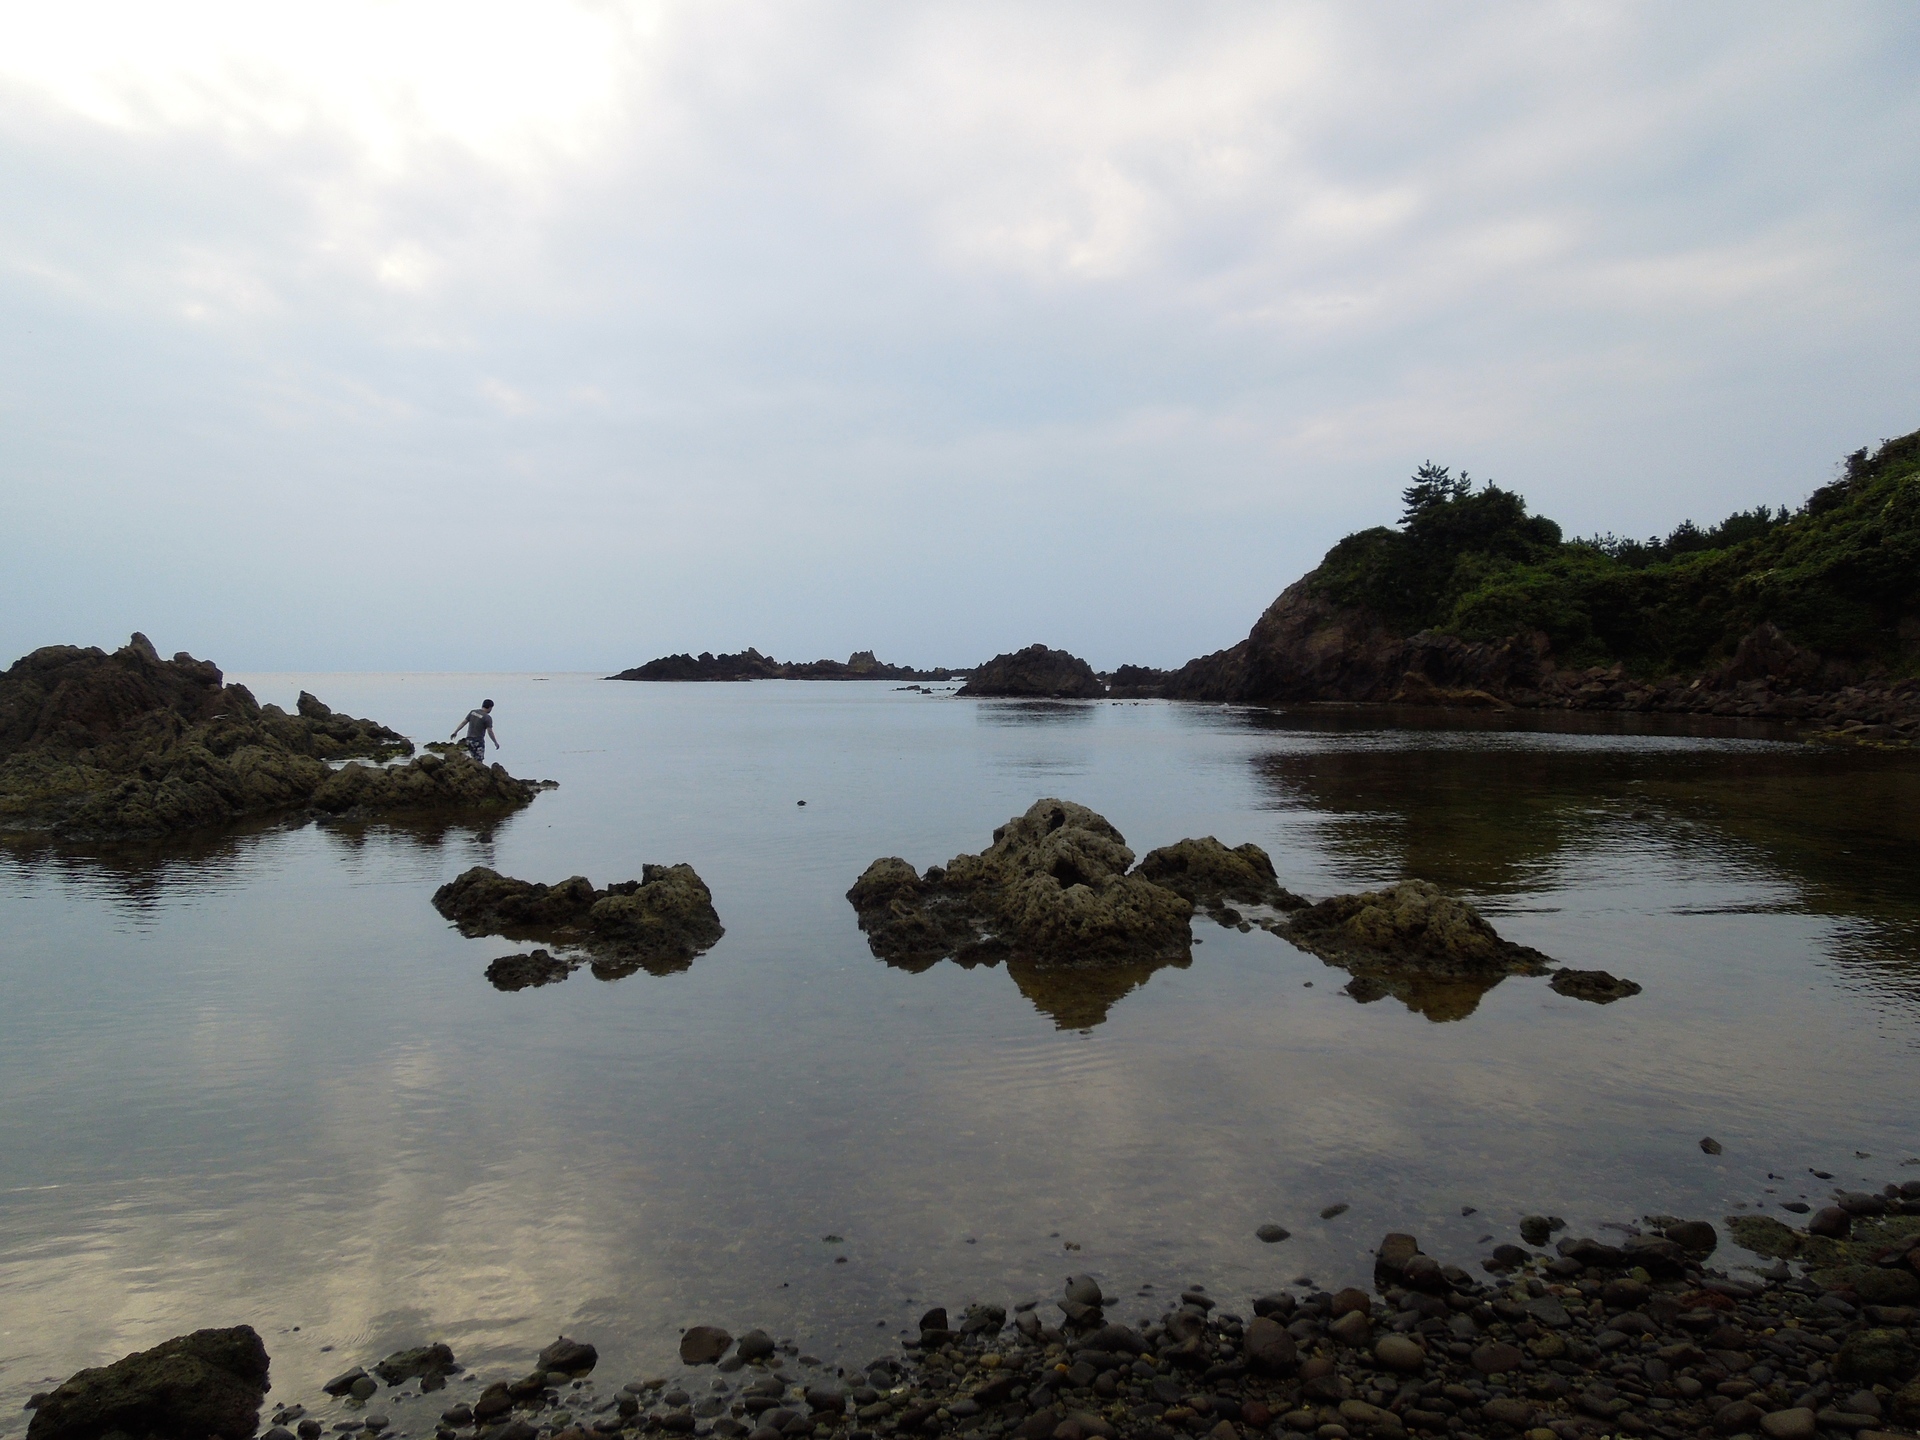 新潟 プライベートビーチでタコ獲りも 民宿たきもと 佐渡 相川 ネギの宿旅